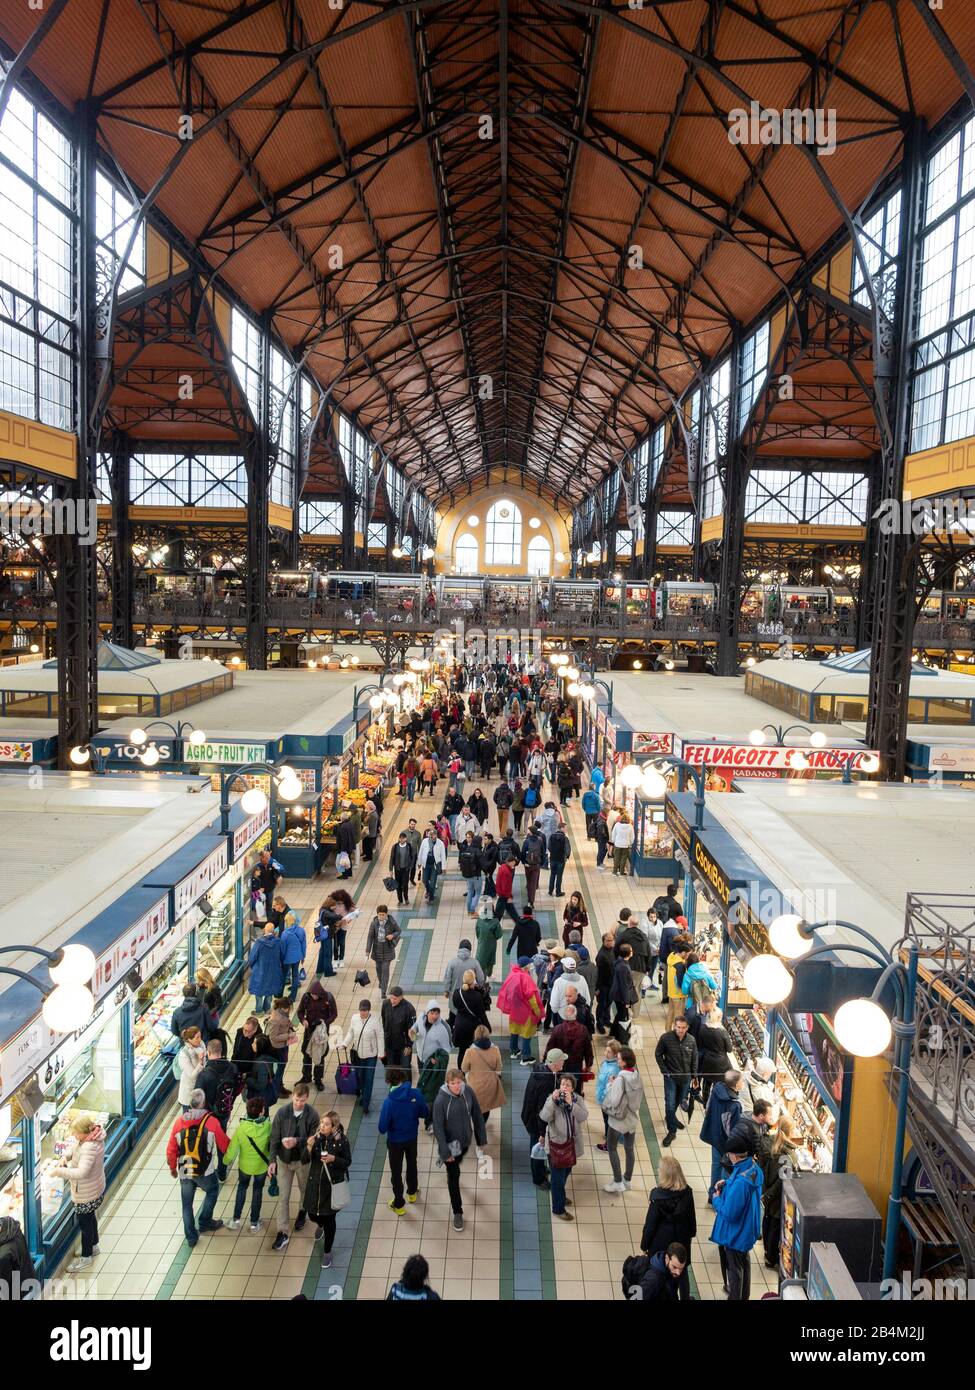 Couloir central de la Grande salle de marché de Budapest: 'Rue principale' bondée de gens dans la grande salle de marché de Budapest. Banque D'Images